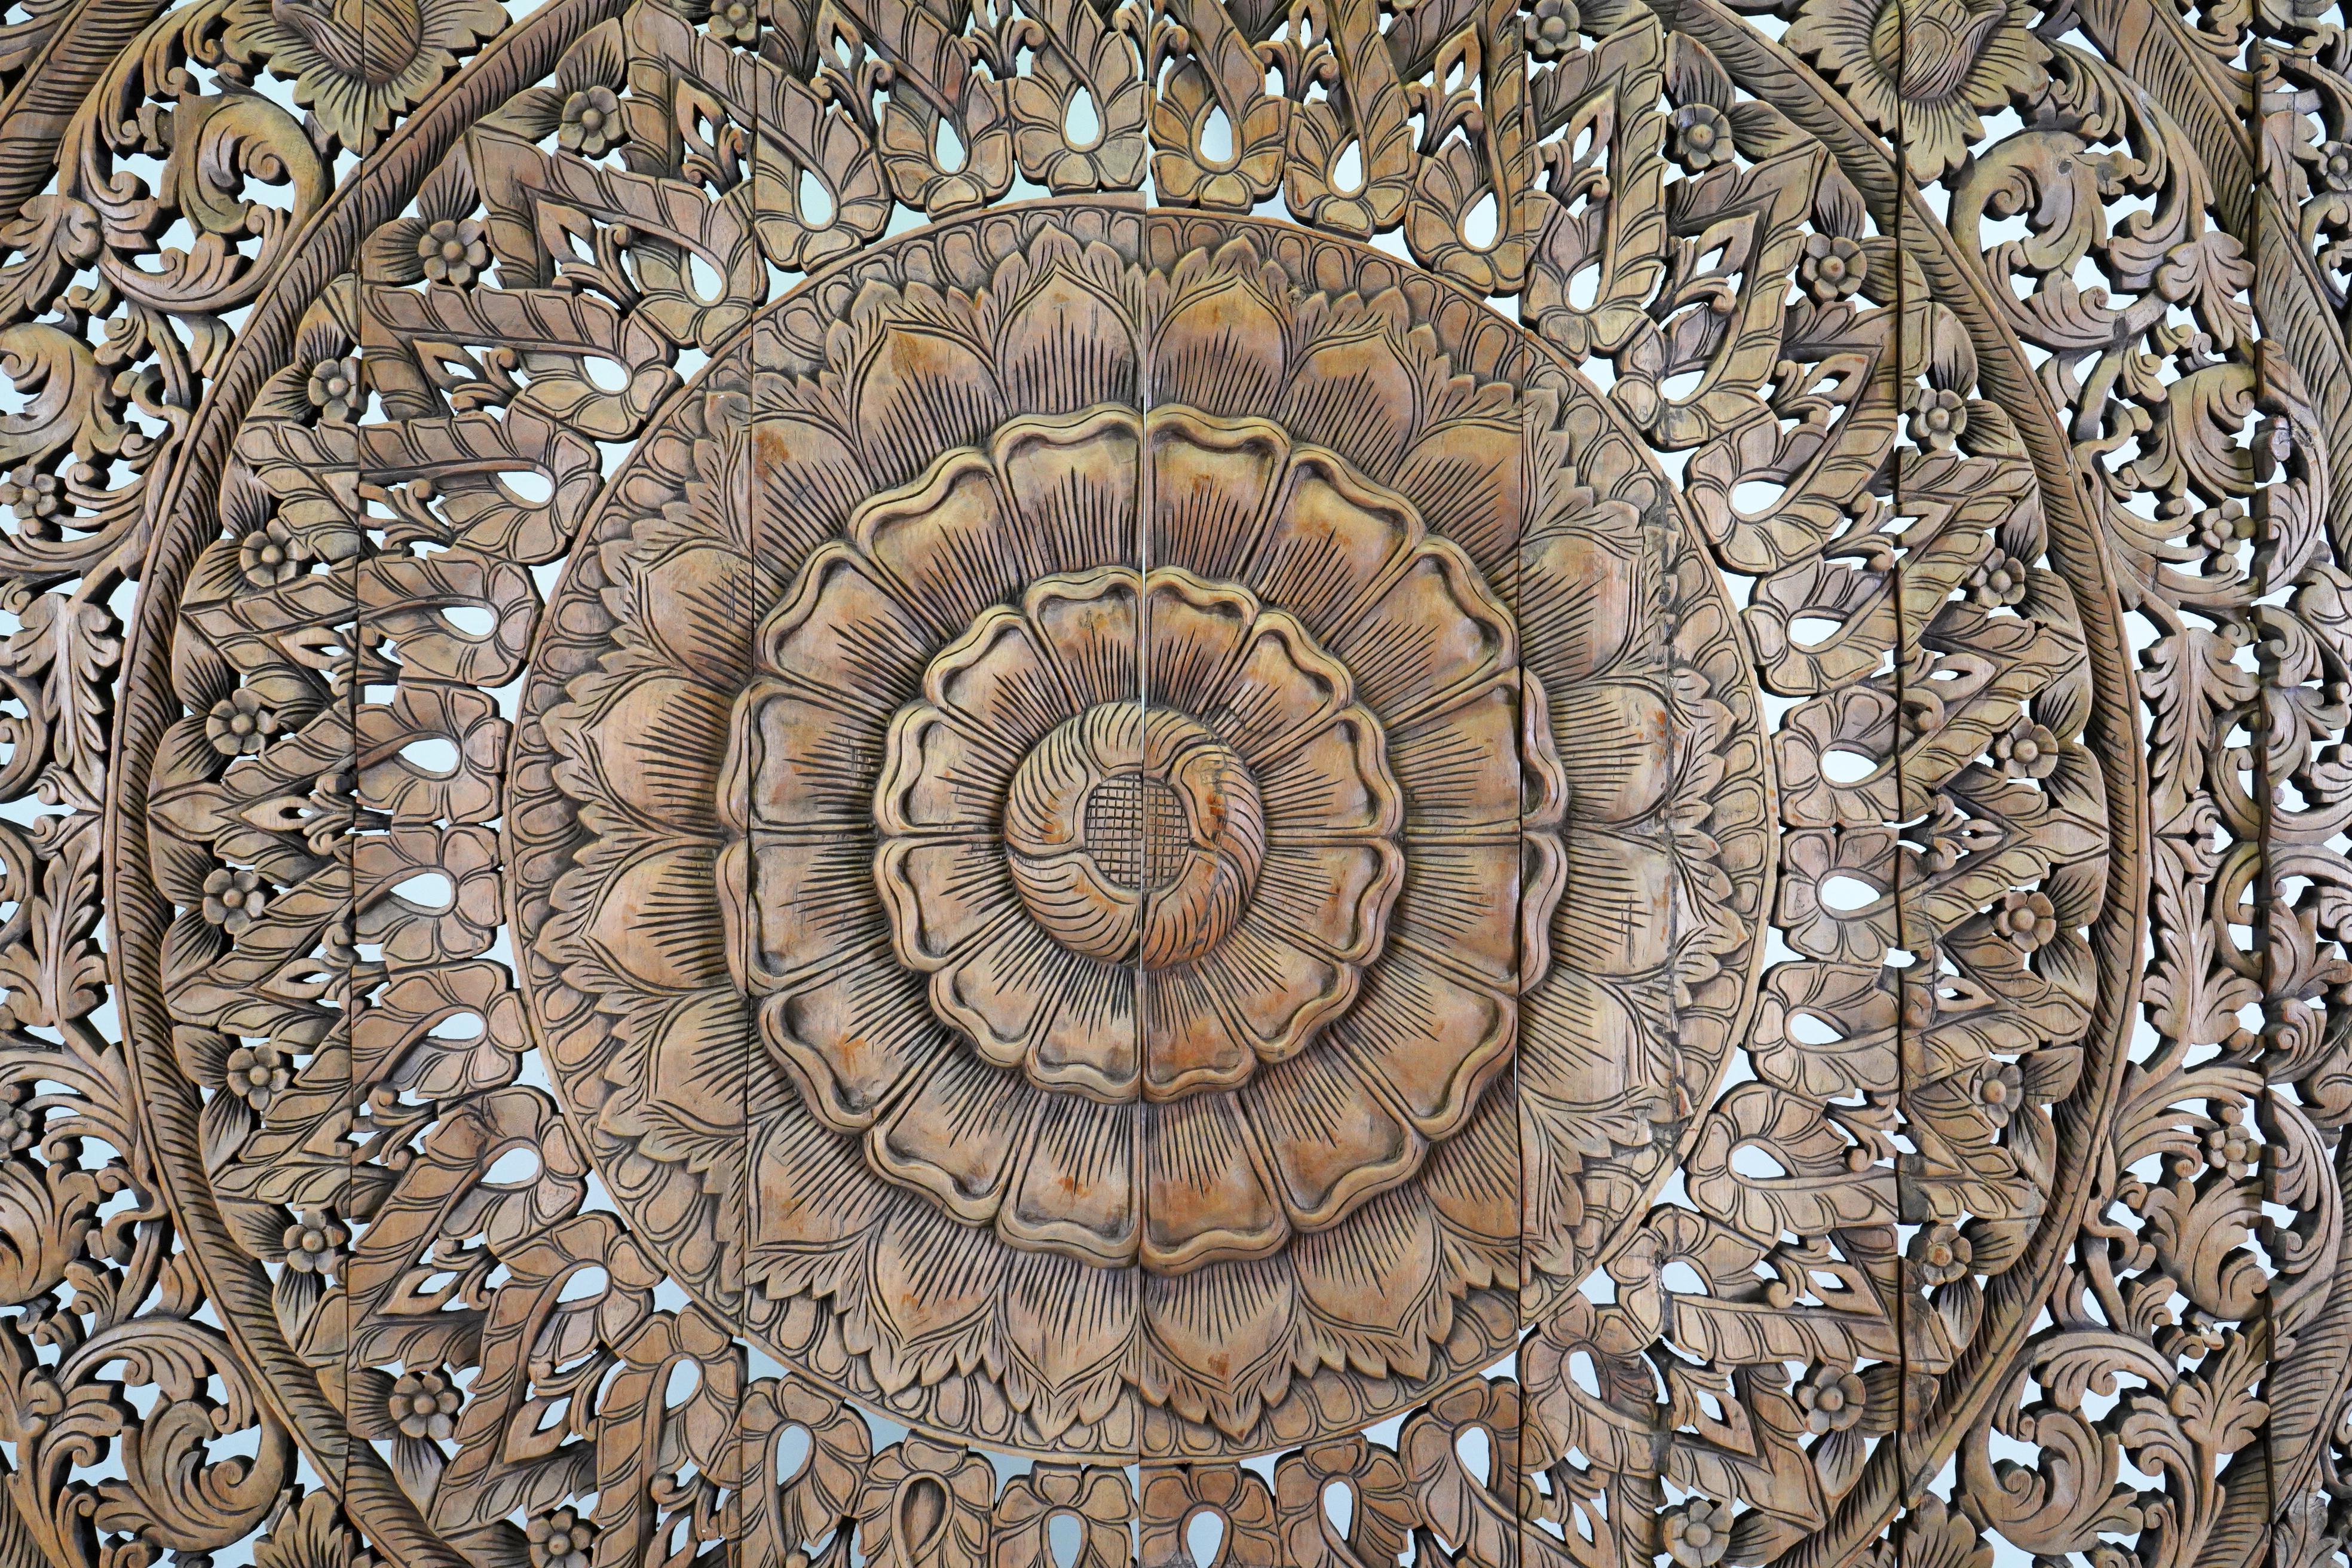 Thai A Carved Teak Wood Lotus Flower Panel 8' x 8'